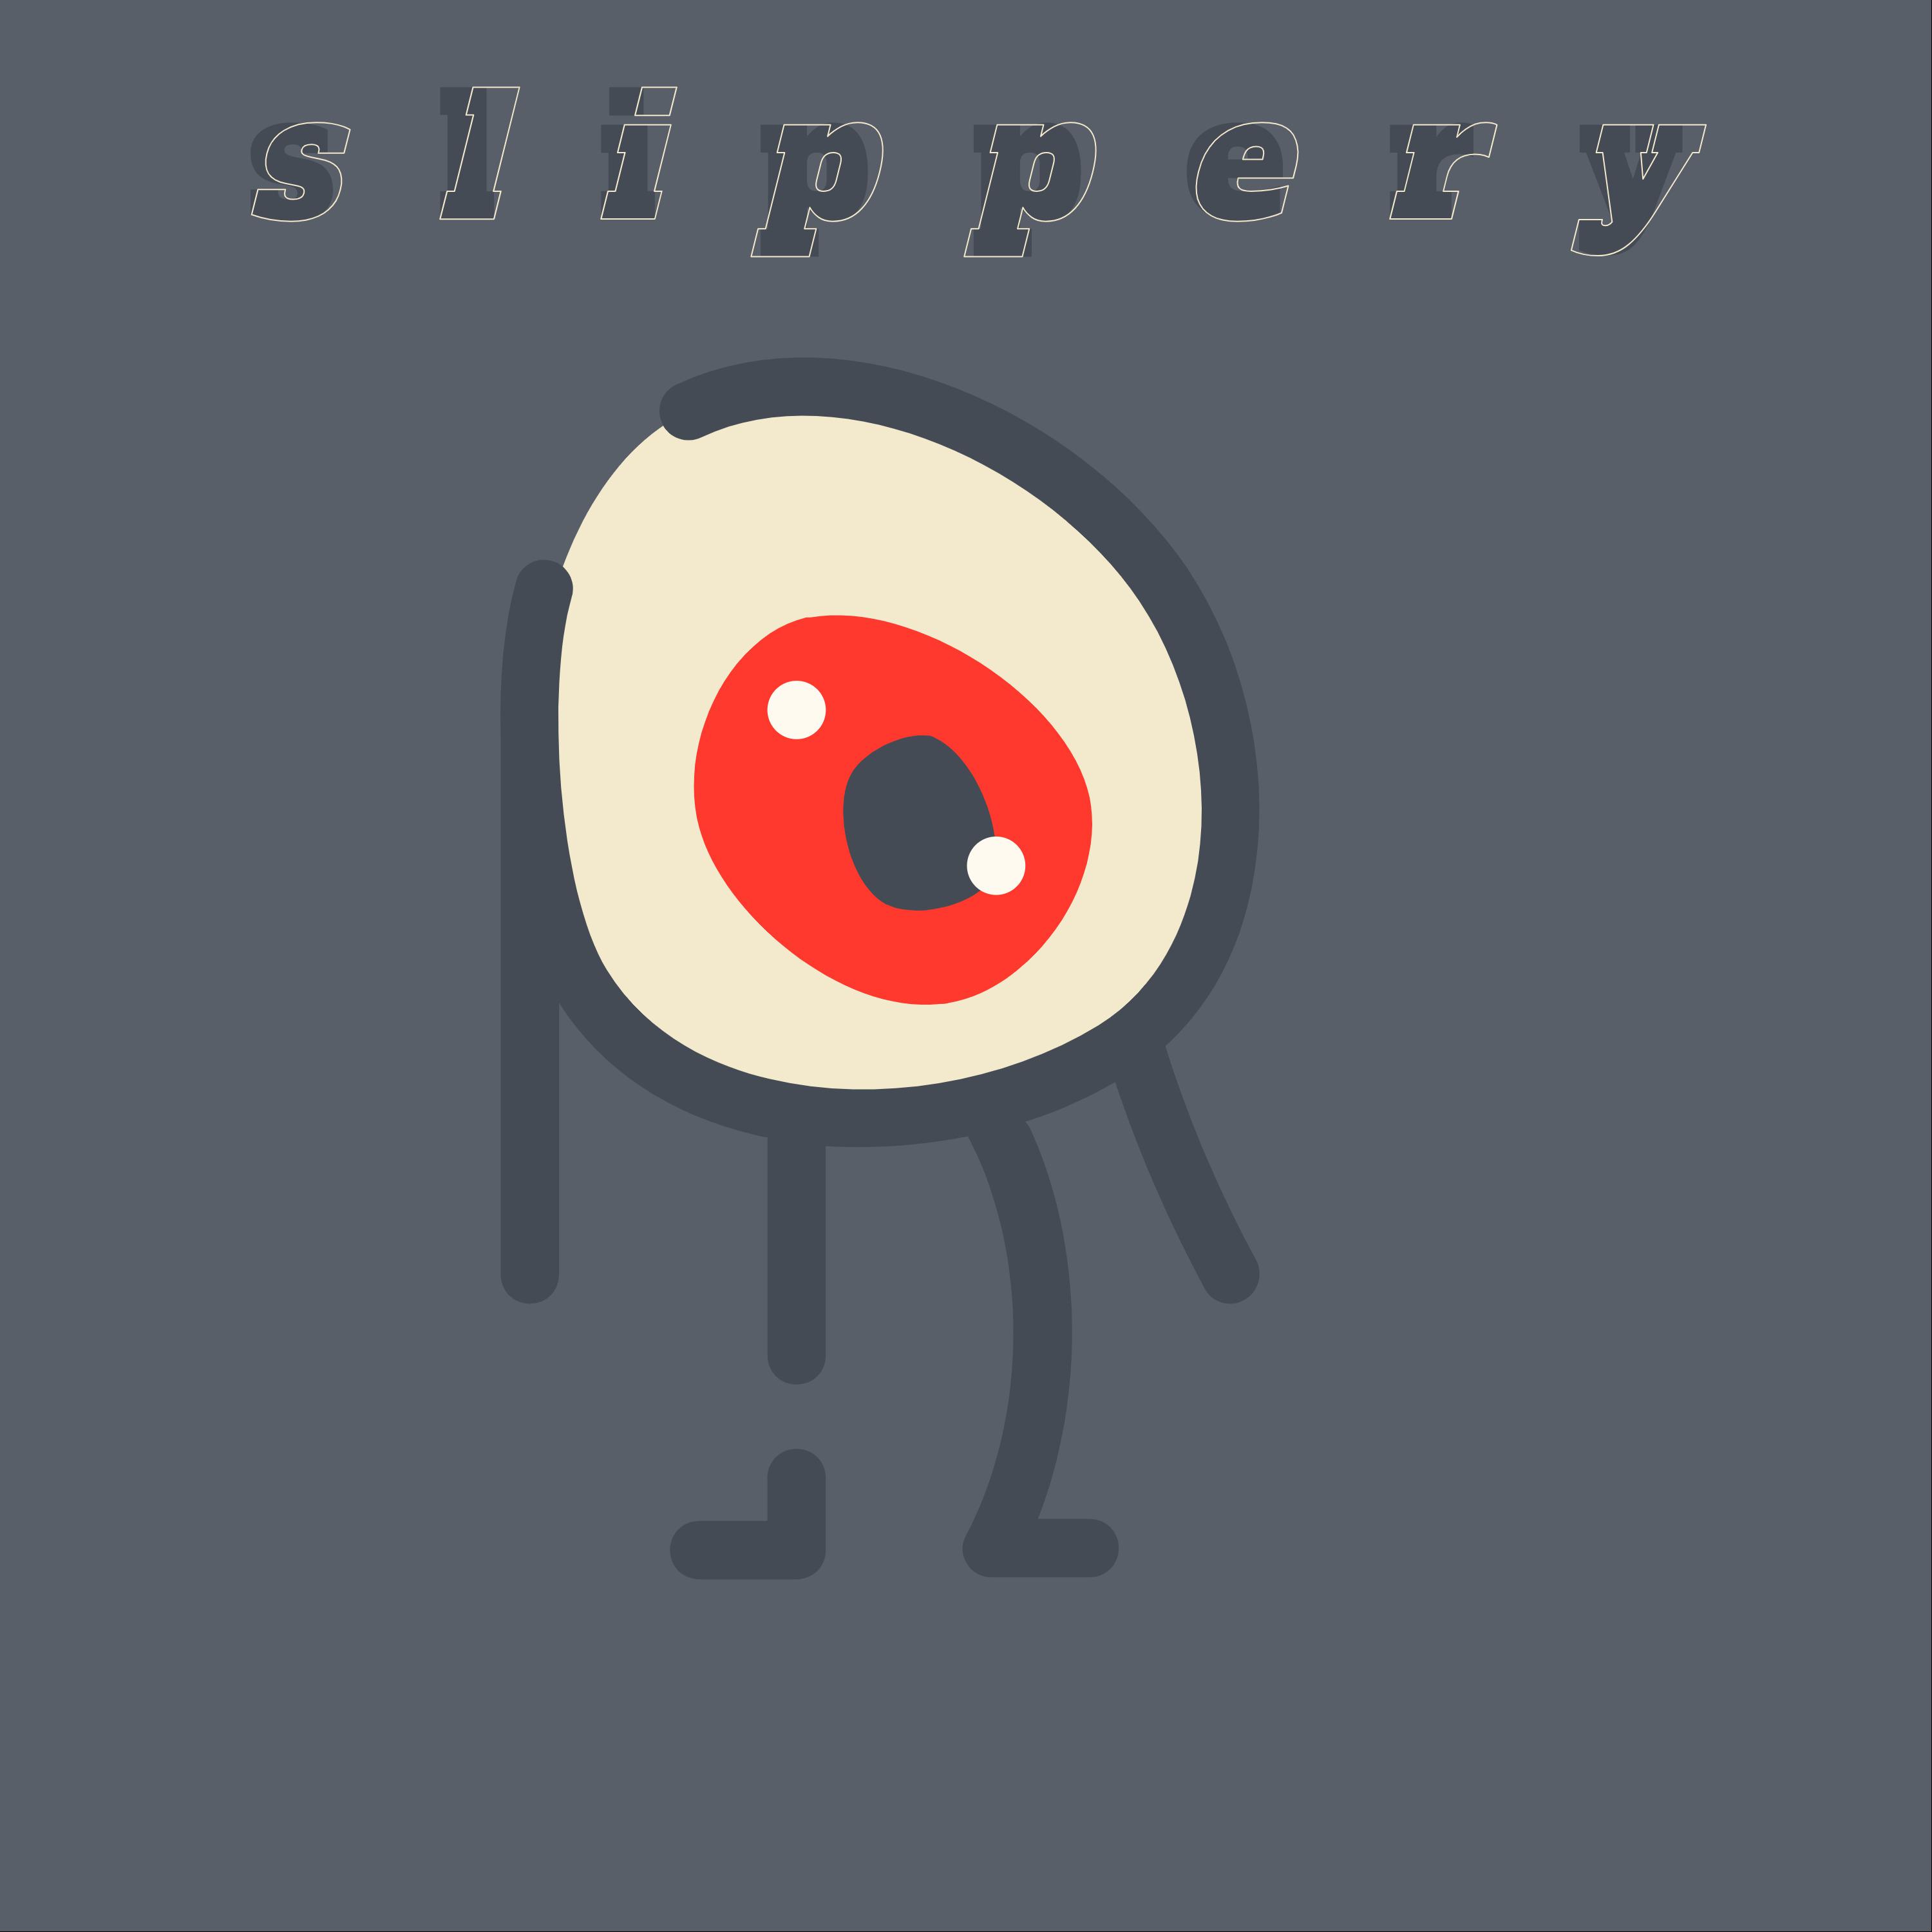 Постер альбома Slippery